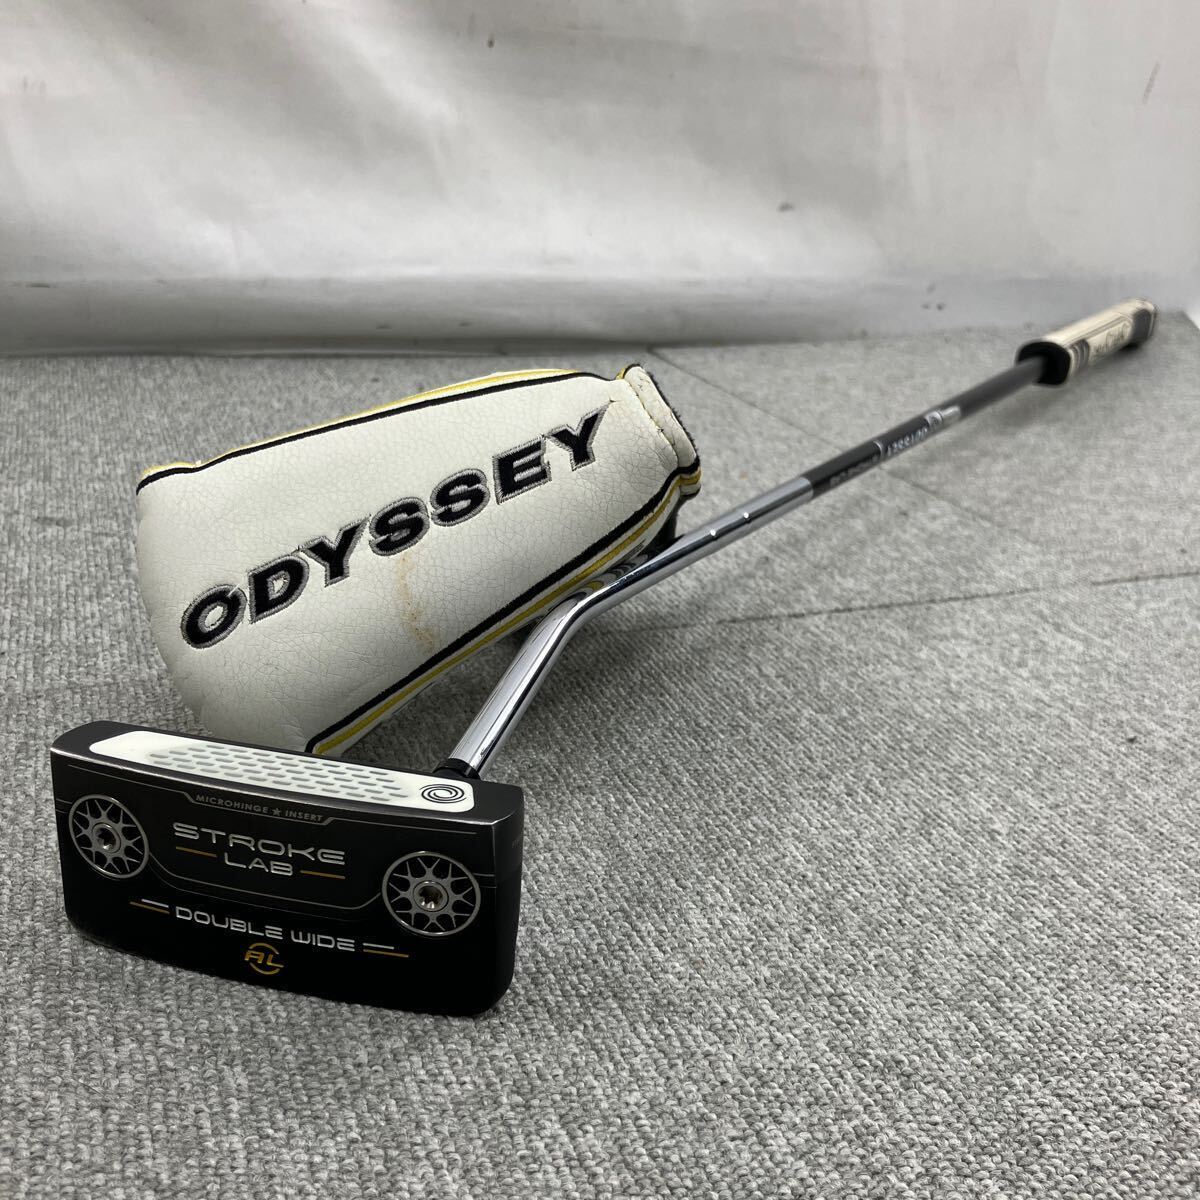 $【売り切り】ODYSSEY オデッセイ STROKE LAB DOUBLE WIDE AL ストロークラボ ブラックシリーズ パター ゴルフ用品の画像1